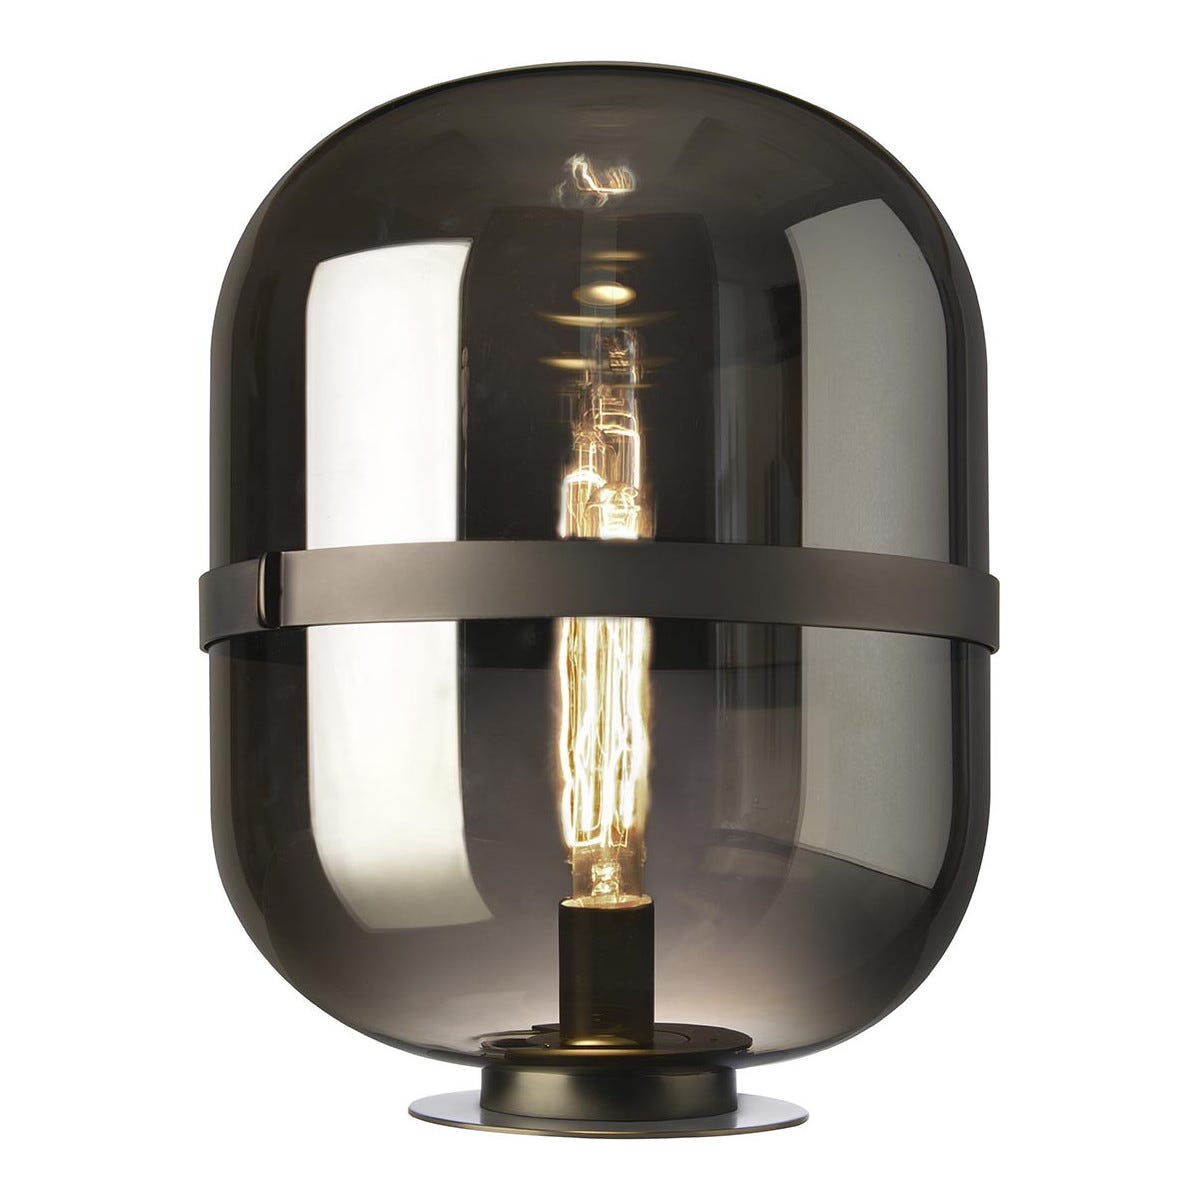 Lampe à poser en métal finition brun argenté et dôme en verre blanc fumé,  style ferronnerie